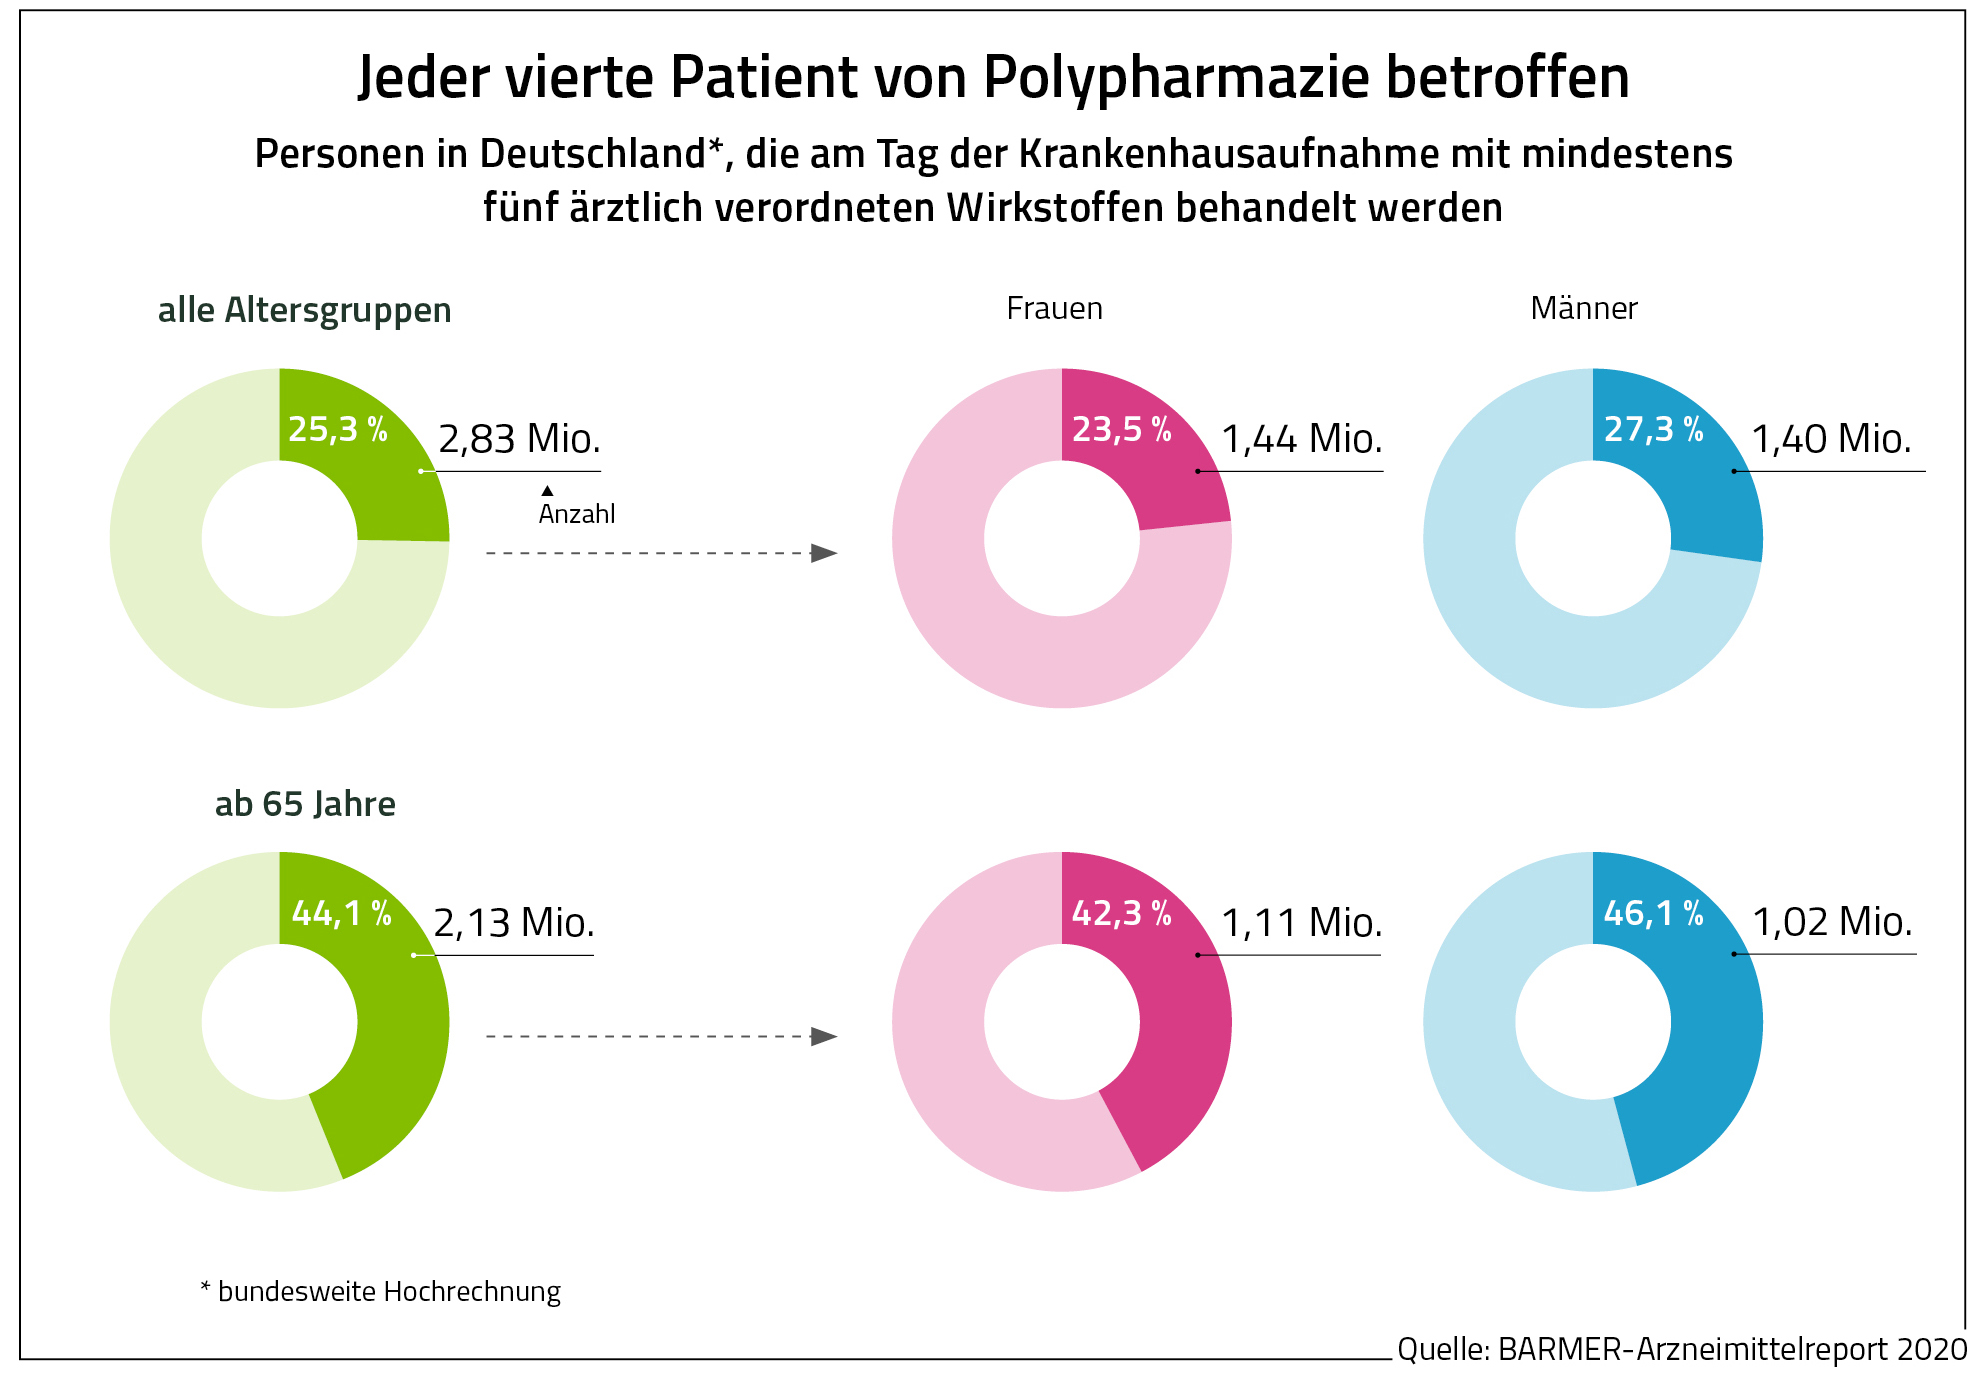 Die Grafik zeigt, wie viele Patienten in Deutschland von Polypharmazie betroffen sind. 